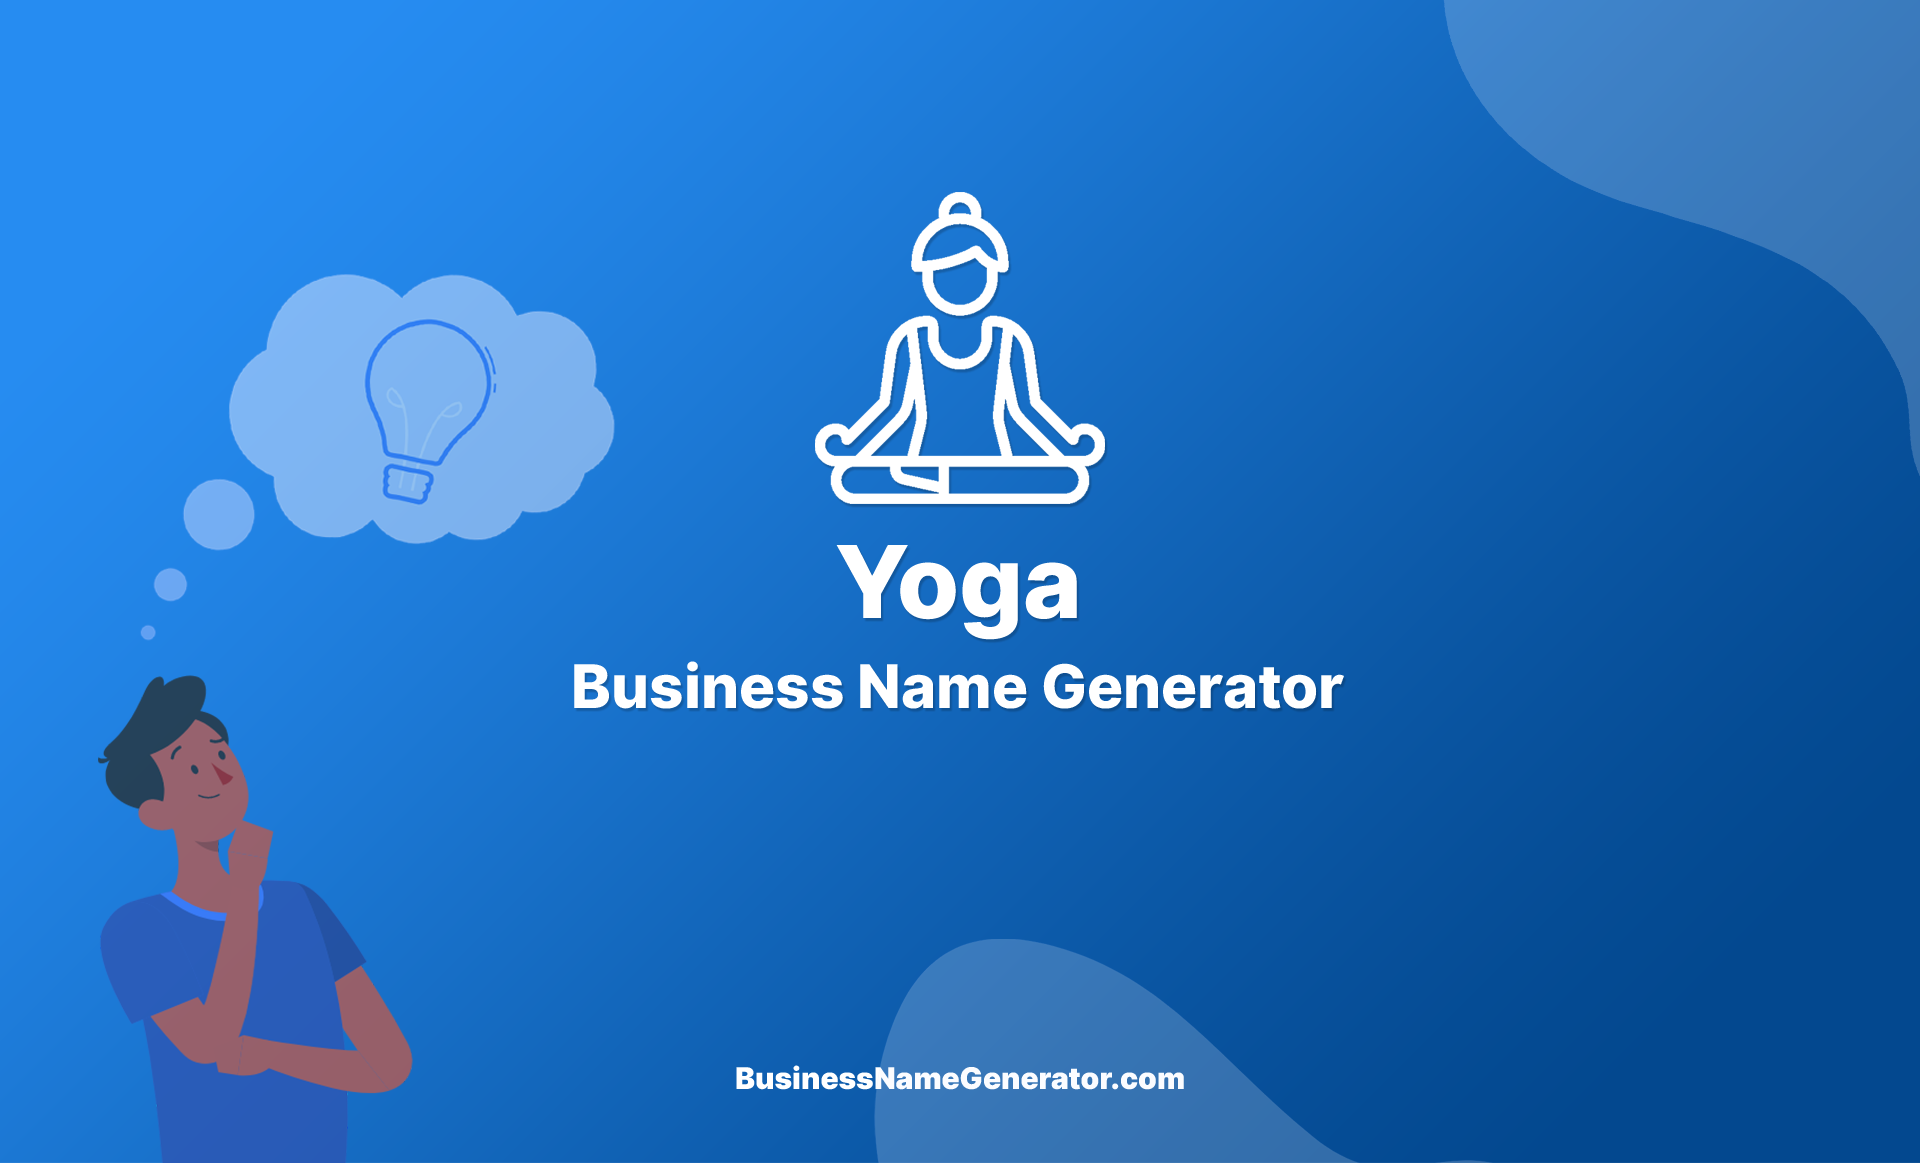 Yoga Business Name Generator